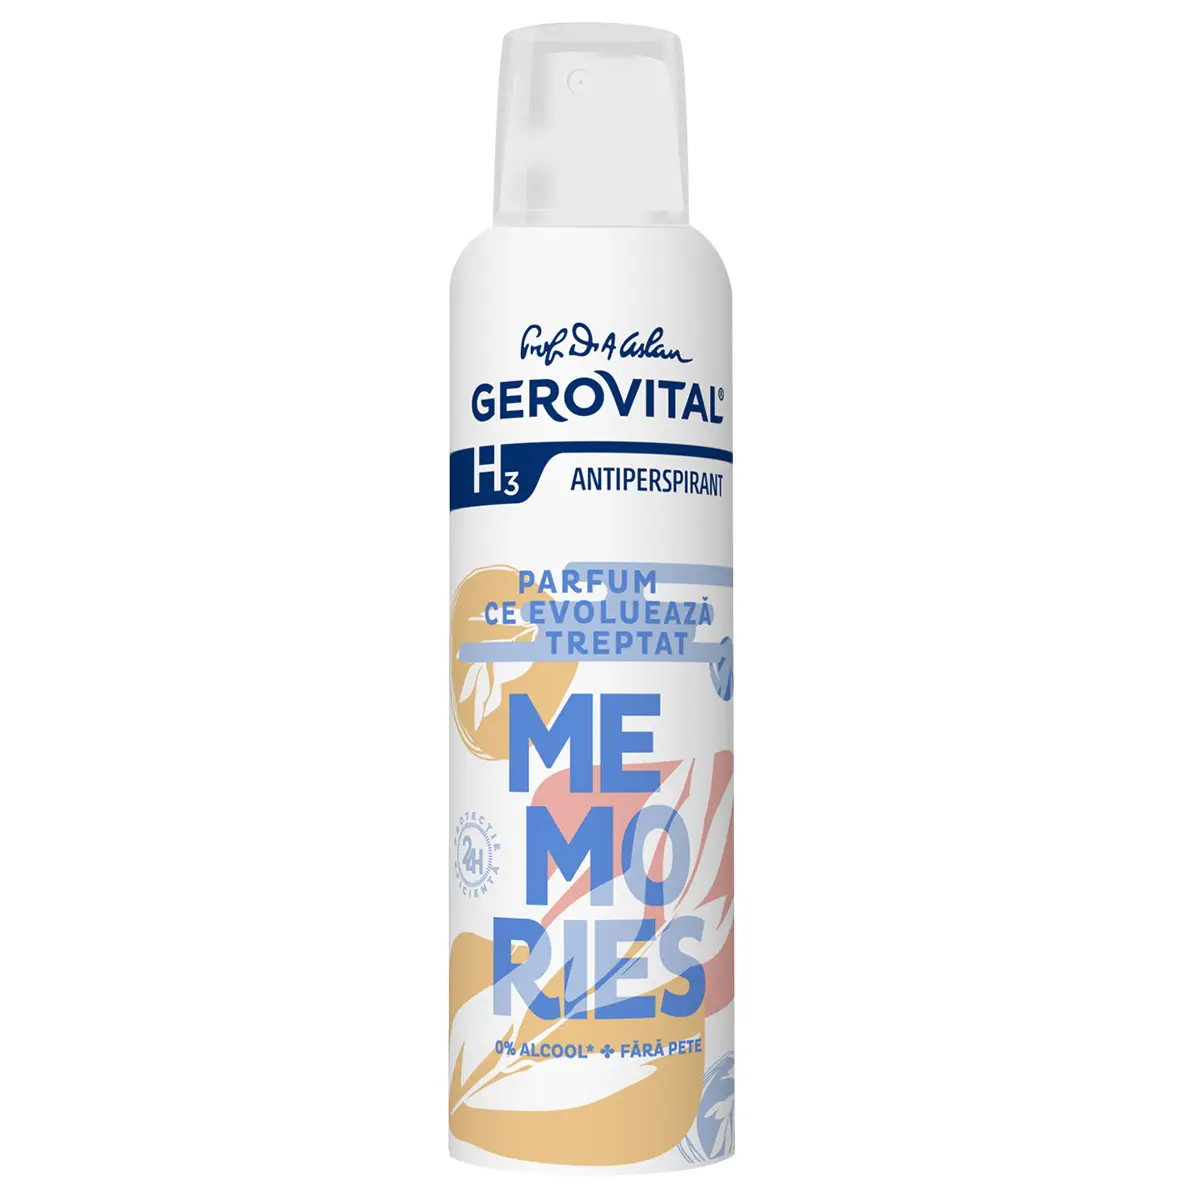 Deodorant antiperspirant Gerovital Memories H3, 150 ml